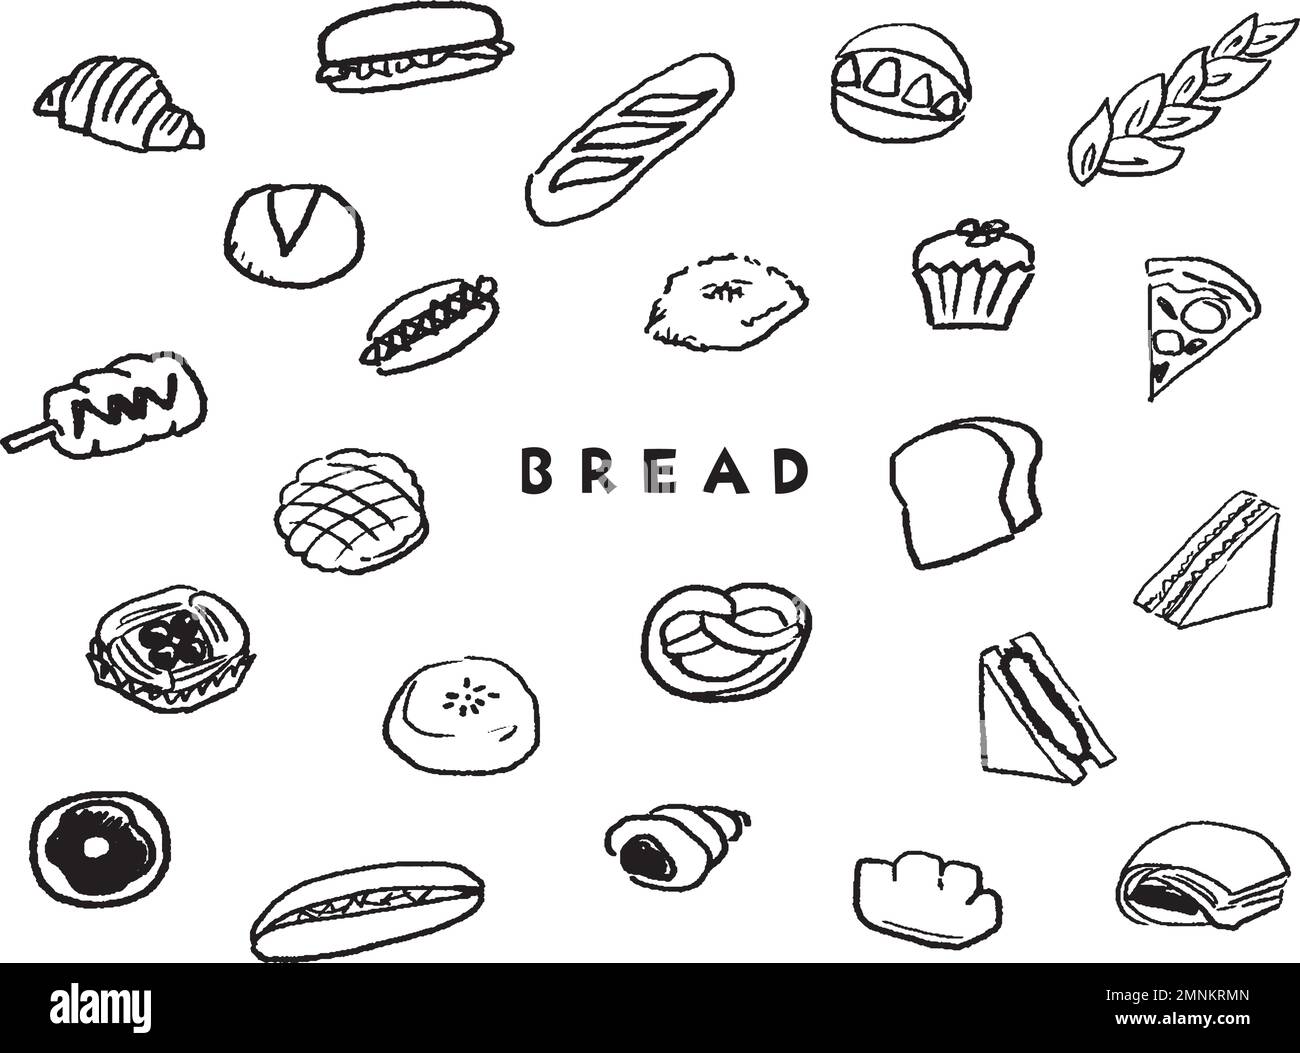 Verschiedene Symbolgruppen für das Zeichnen von Brotlinien. Illustrationen von köstlichem Brot wie Brot, Visa und Sandwiches. Stock Vektor